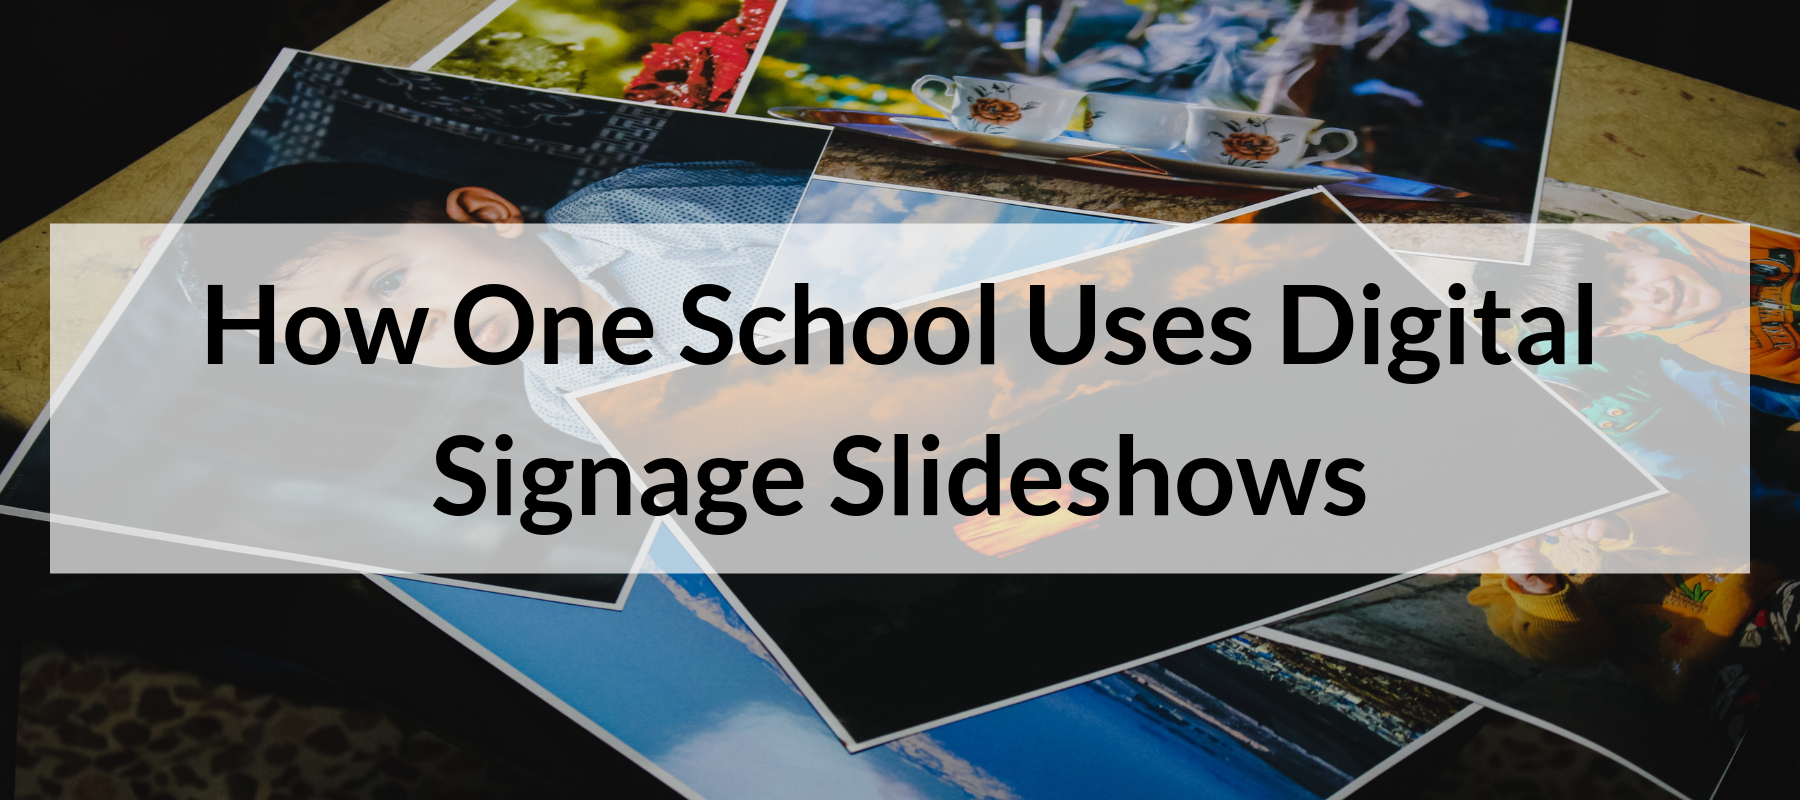 Digital Signage Slideshows